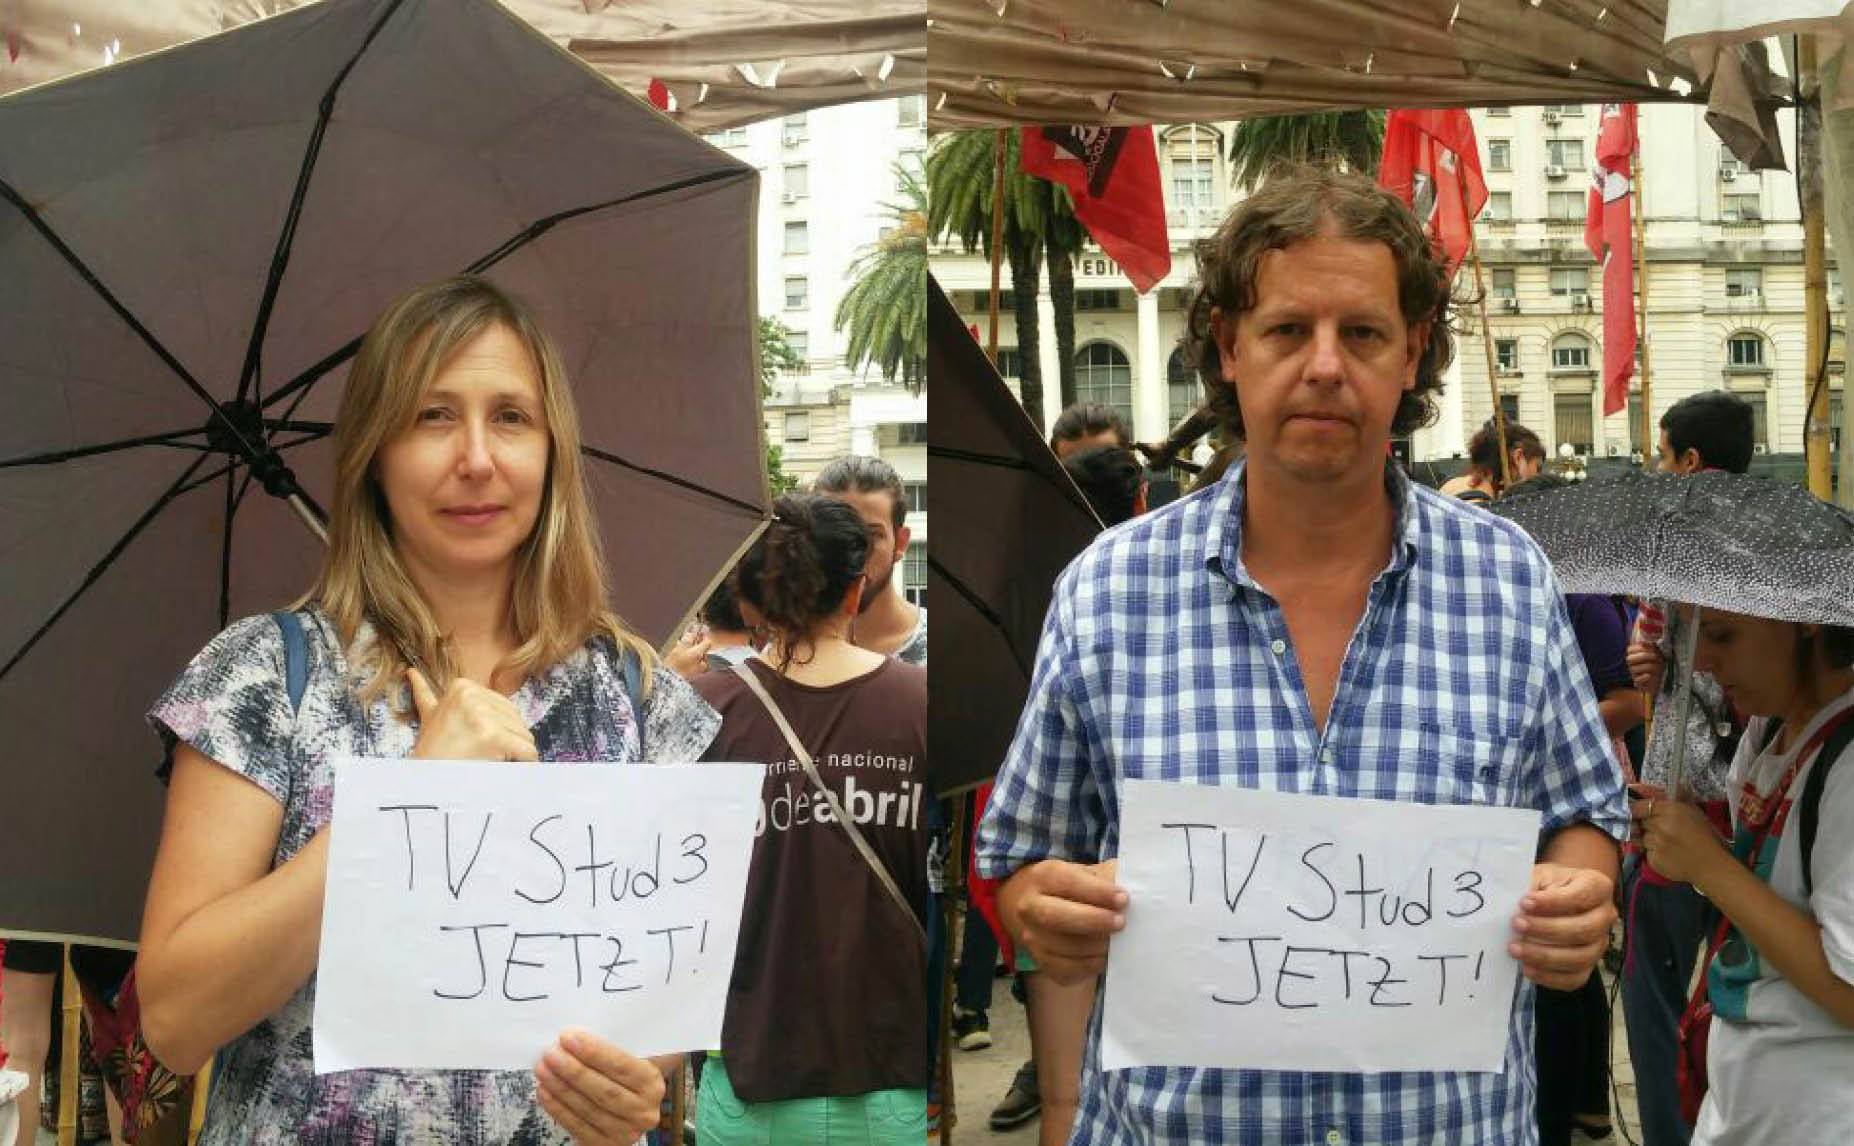 Abgeordnete aus Argentinien sagen: TVStud jetzt!